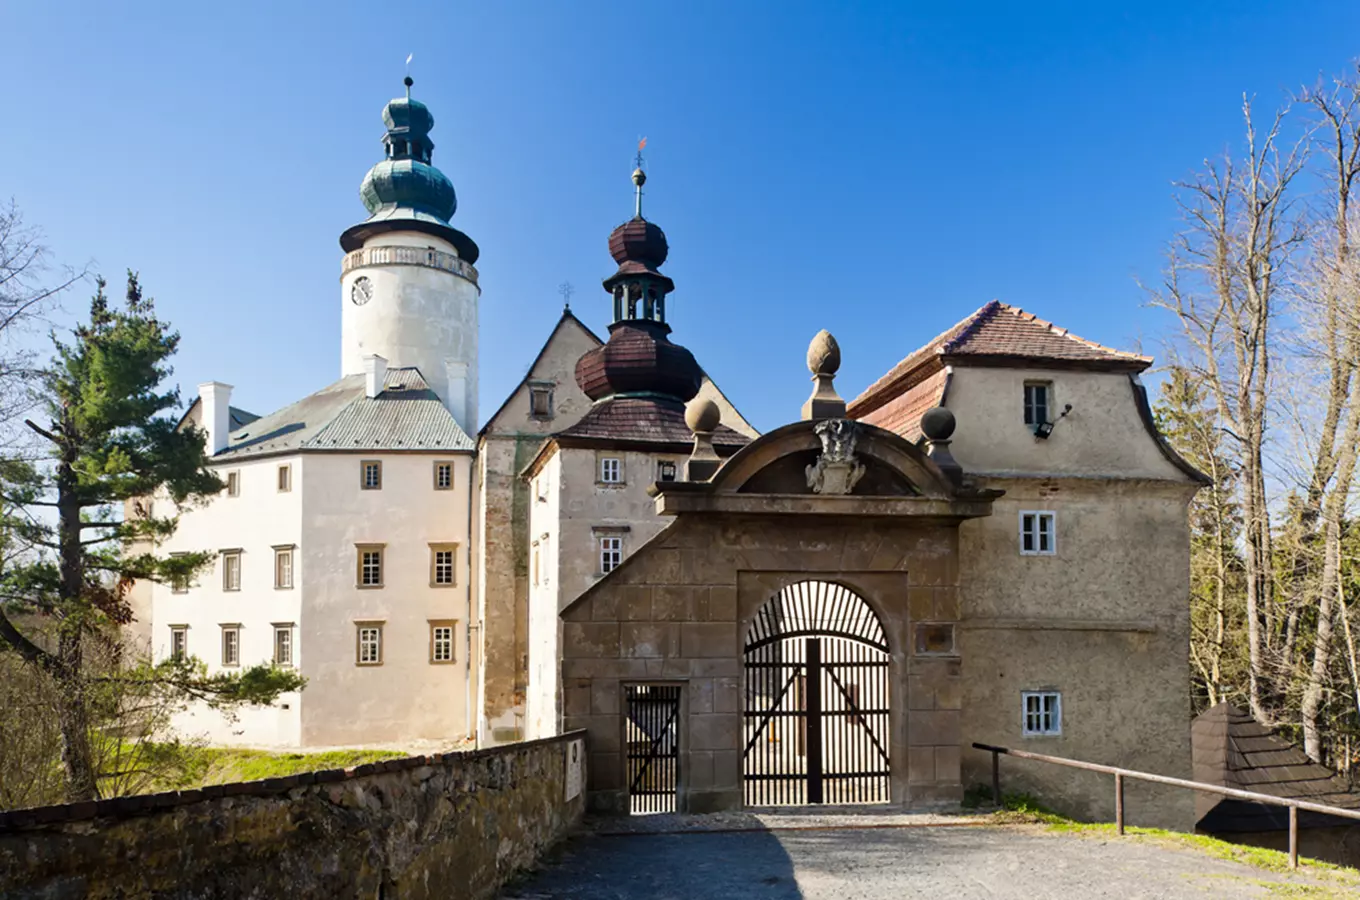 Navštivte středověkou věž zámku Lemberk a rozhlédněte se po Podještědí